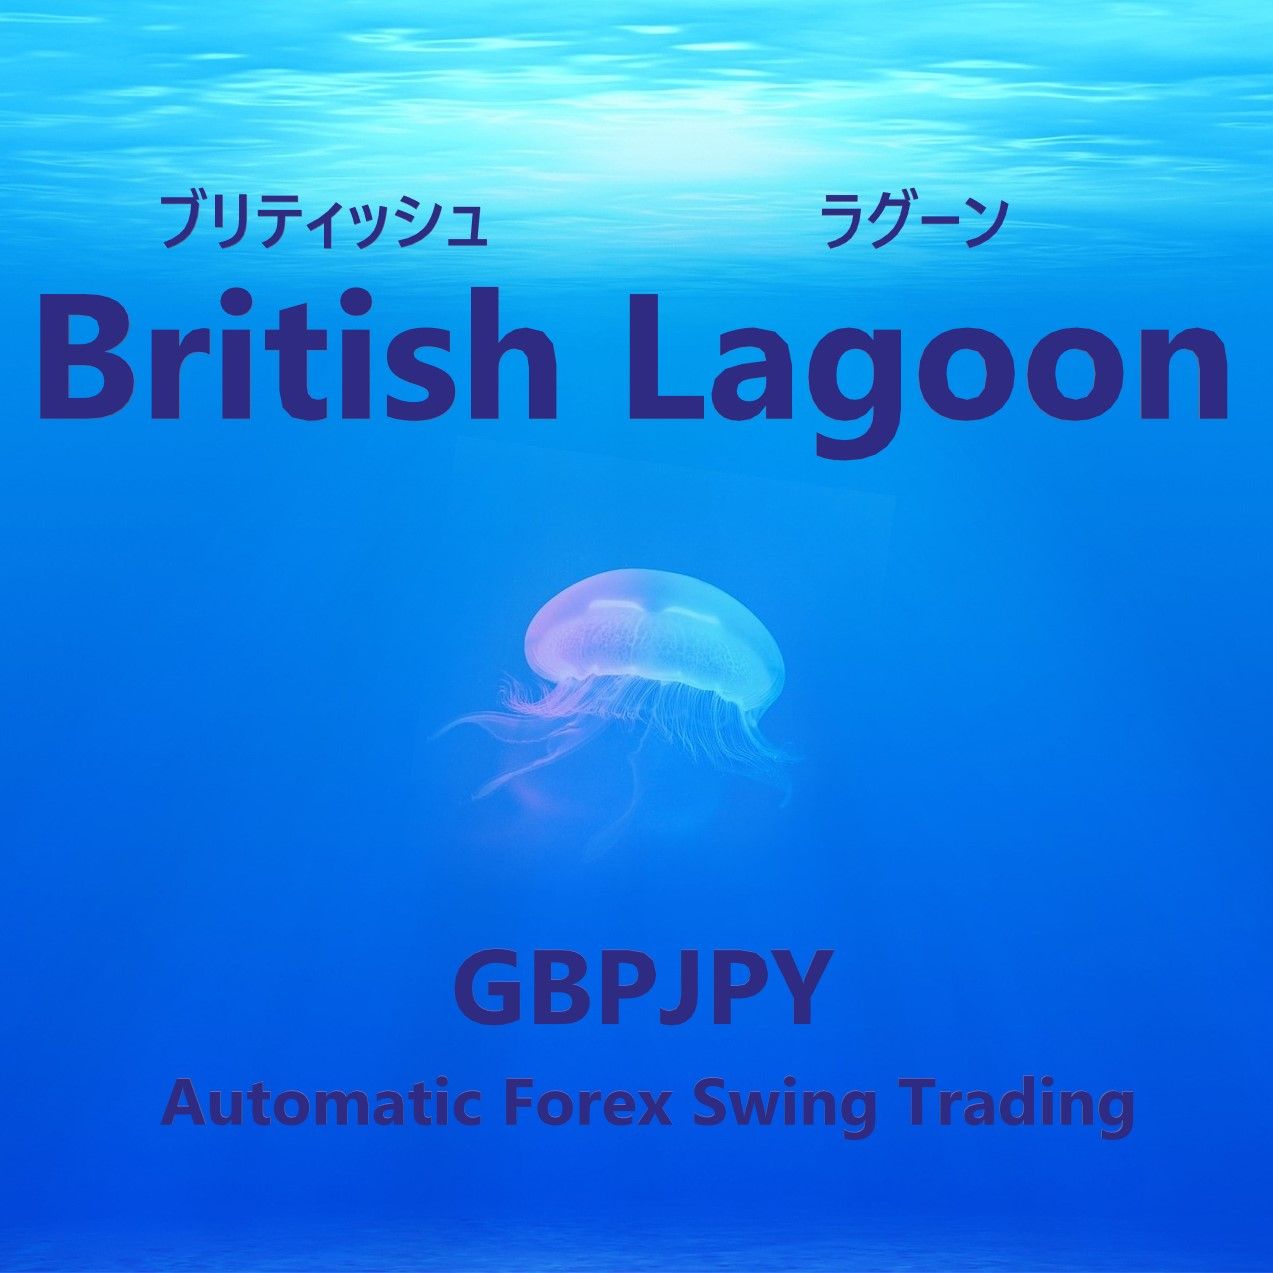 British Lagoon（ブリティッシュラグーン）GBPJPY Auto Trading